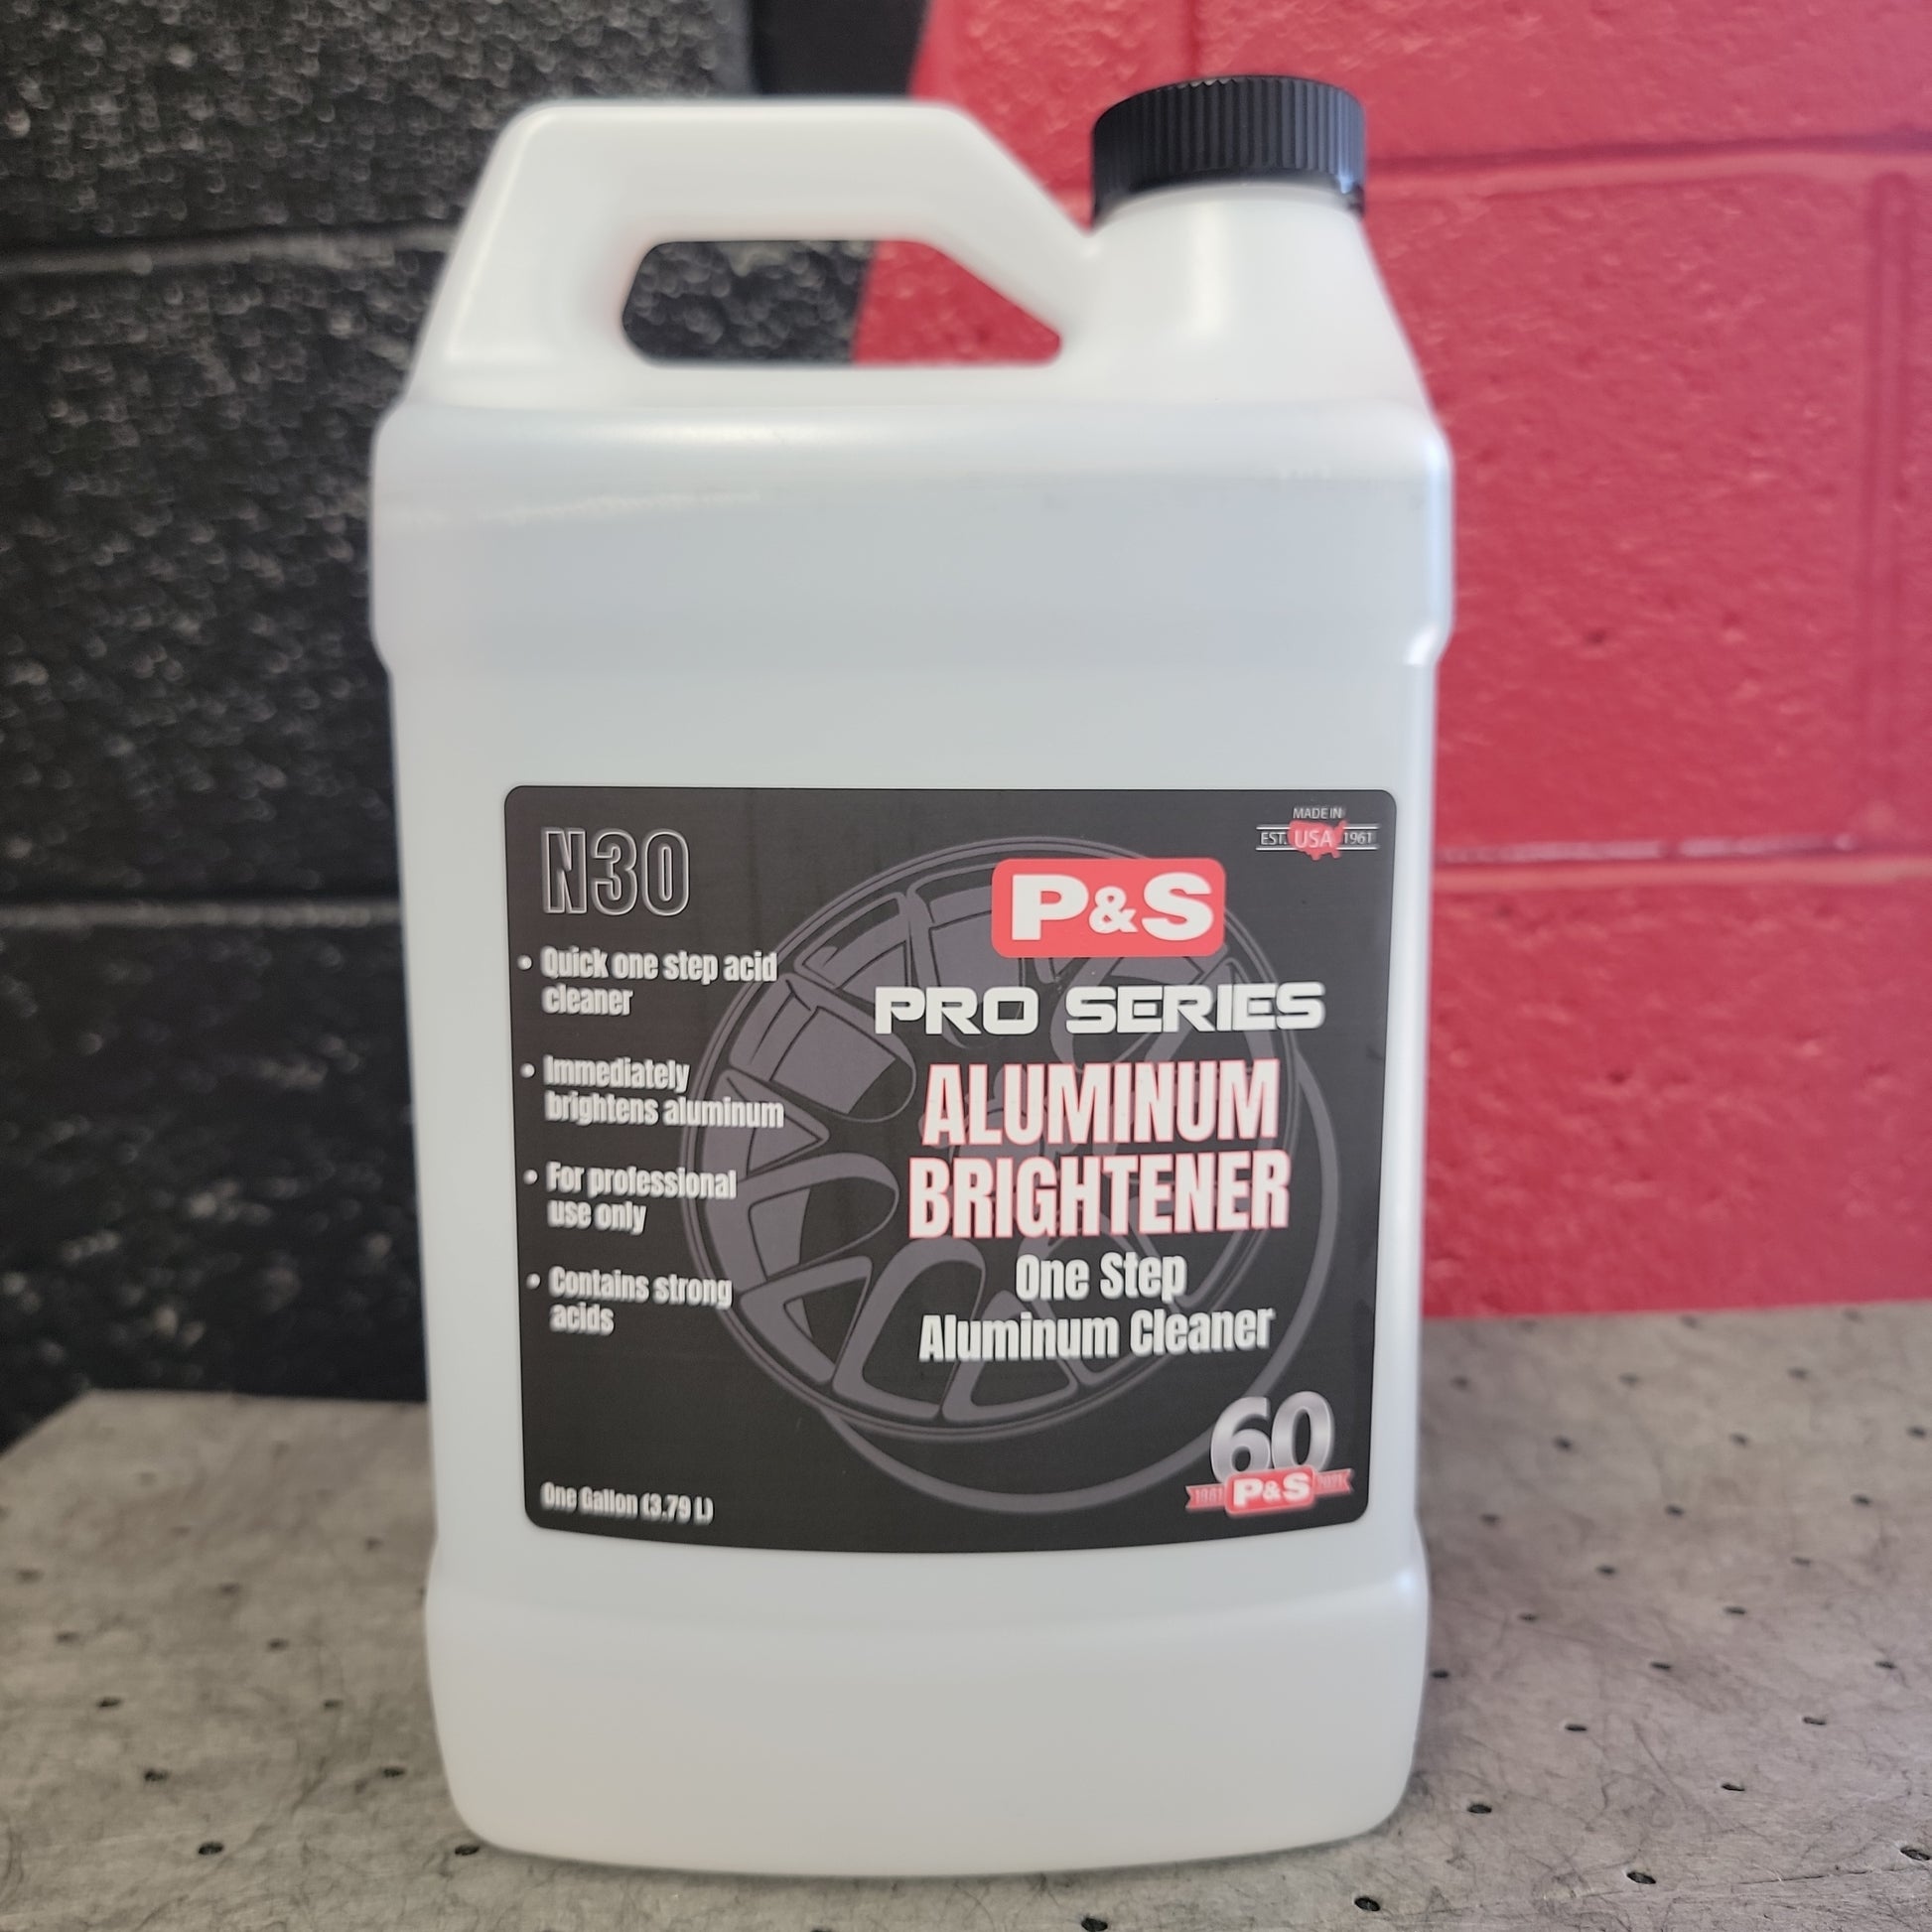 P&S Aluminum Brightener, One Step Aluminum Cleaner - 1 gal.